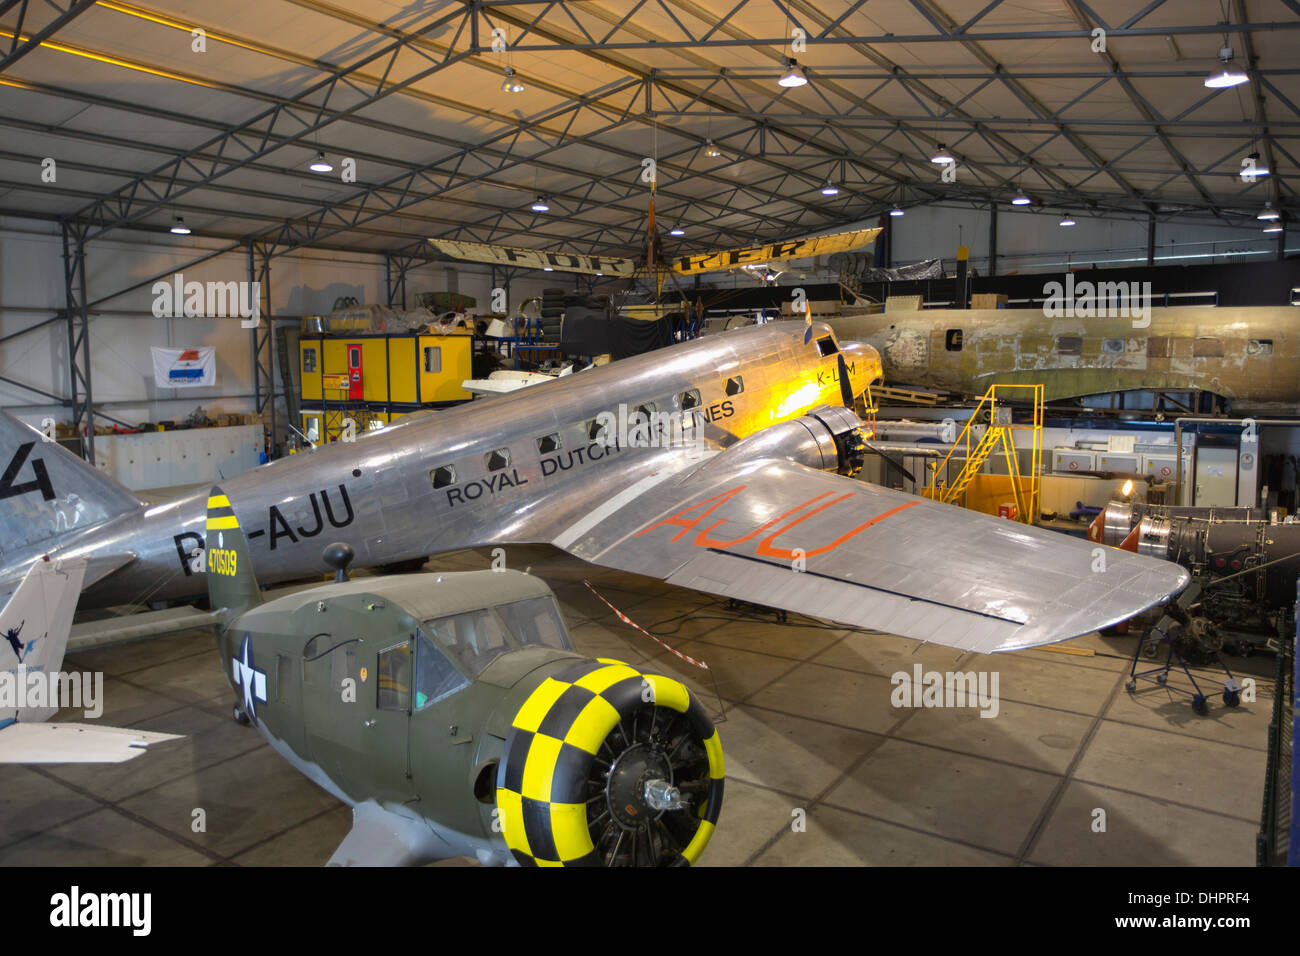 Paesi Bassi, Lelystad, Aviodrome, aviazione museo di storia. Douglas DC-3 Dakota di KLM Royal Dutch Airlines Foto Stock